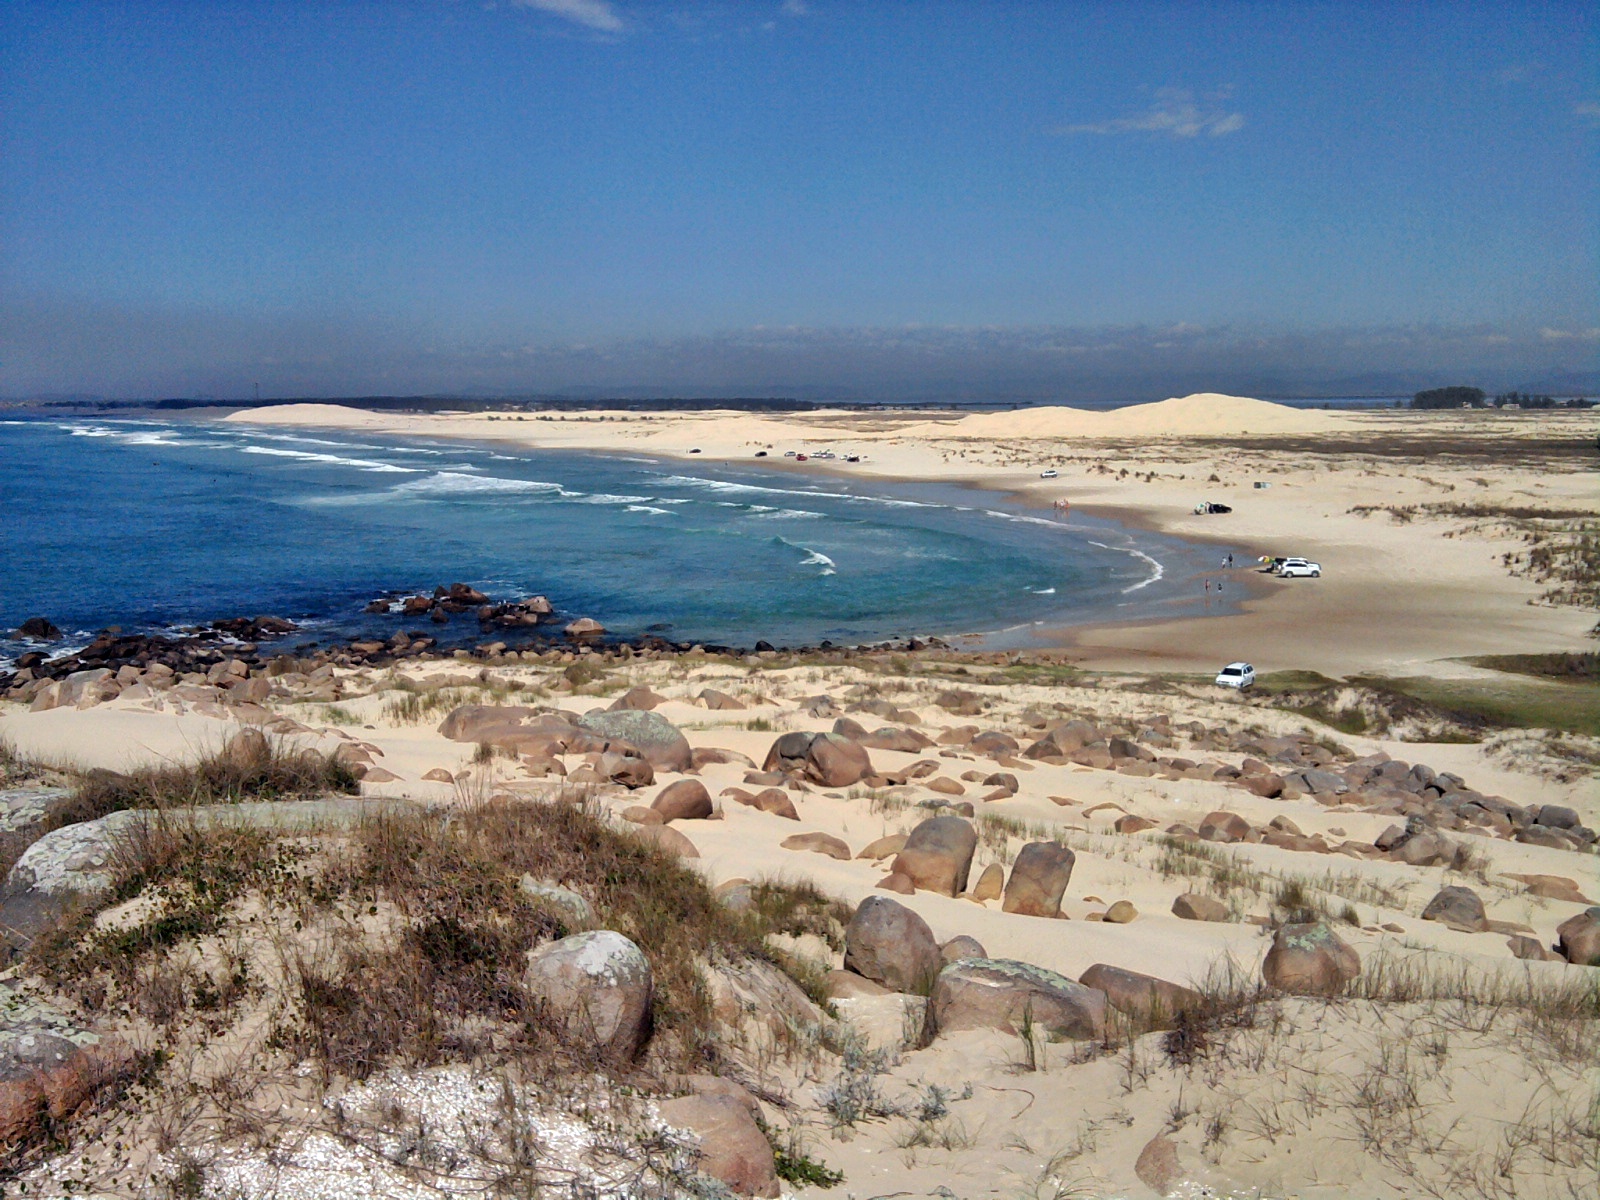 Fotografie cu Praia da Cigana cu o suprafață de nisip fin strălucitor